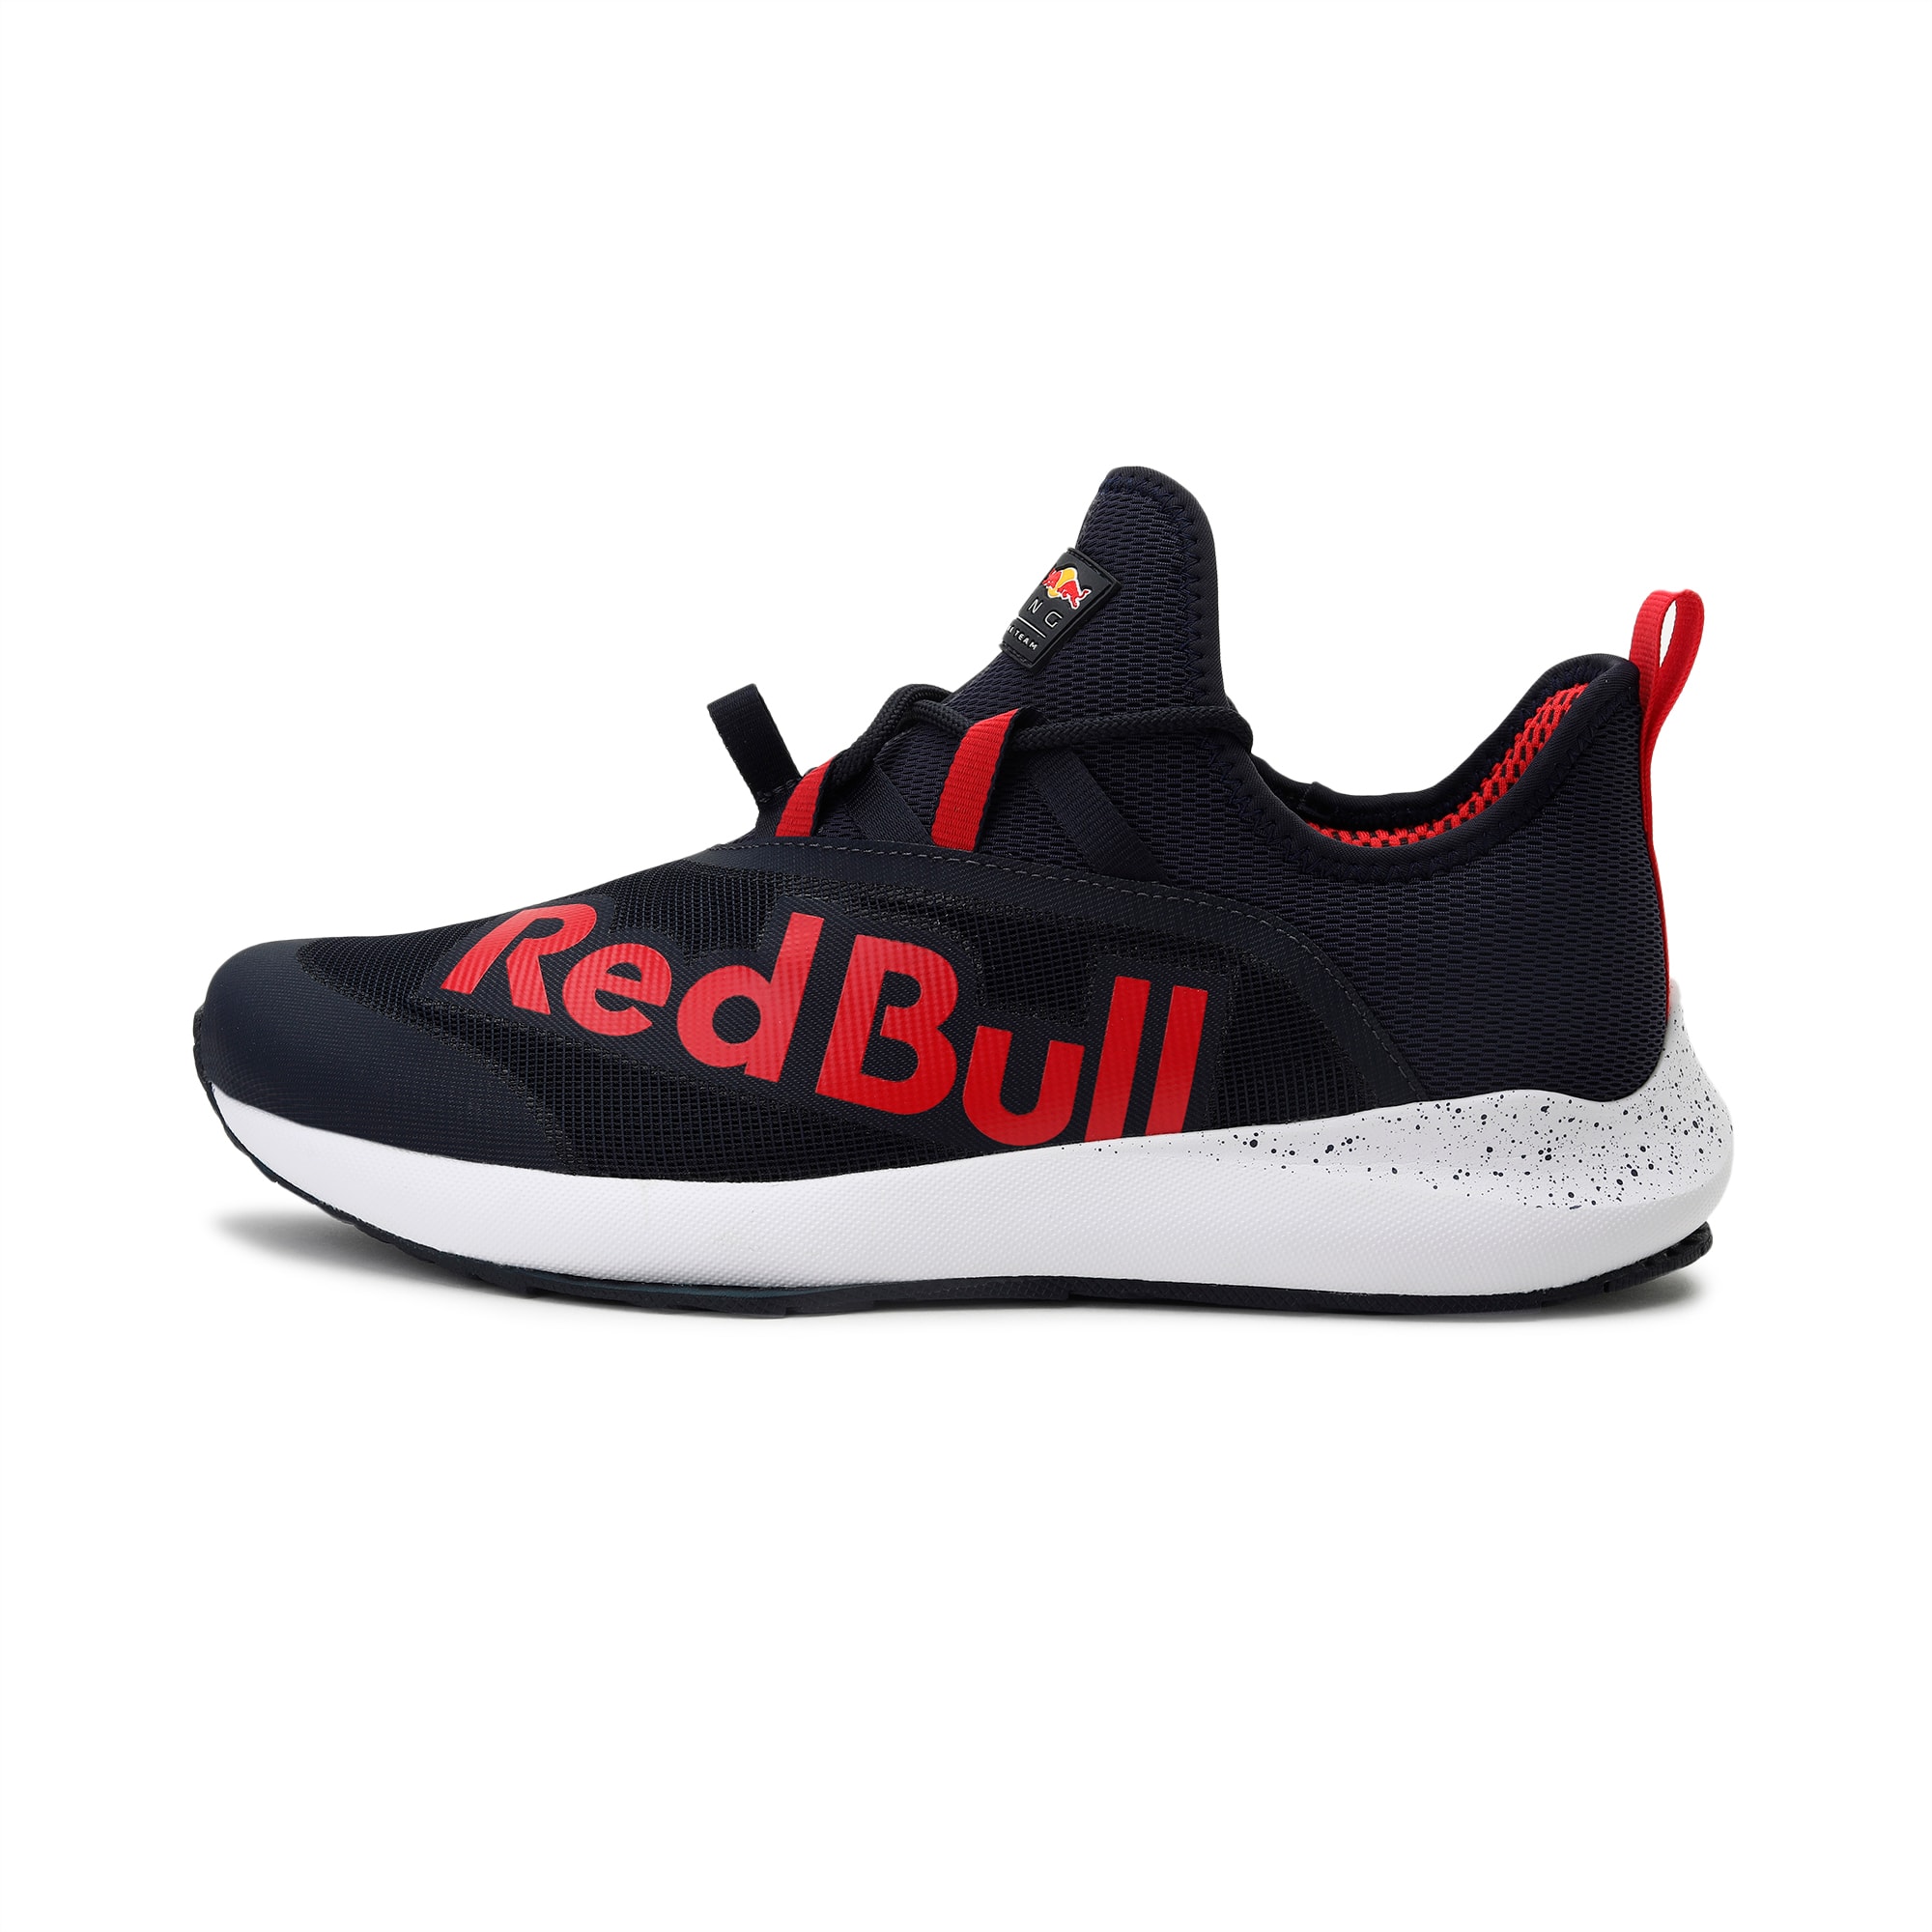 red bull racing sneakers